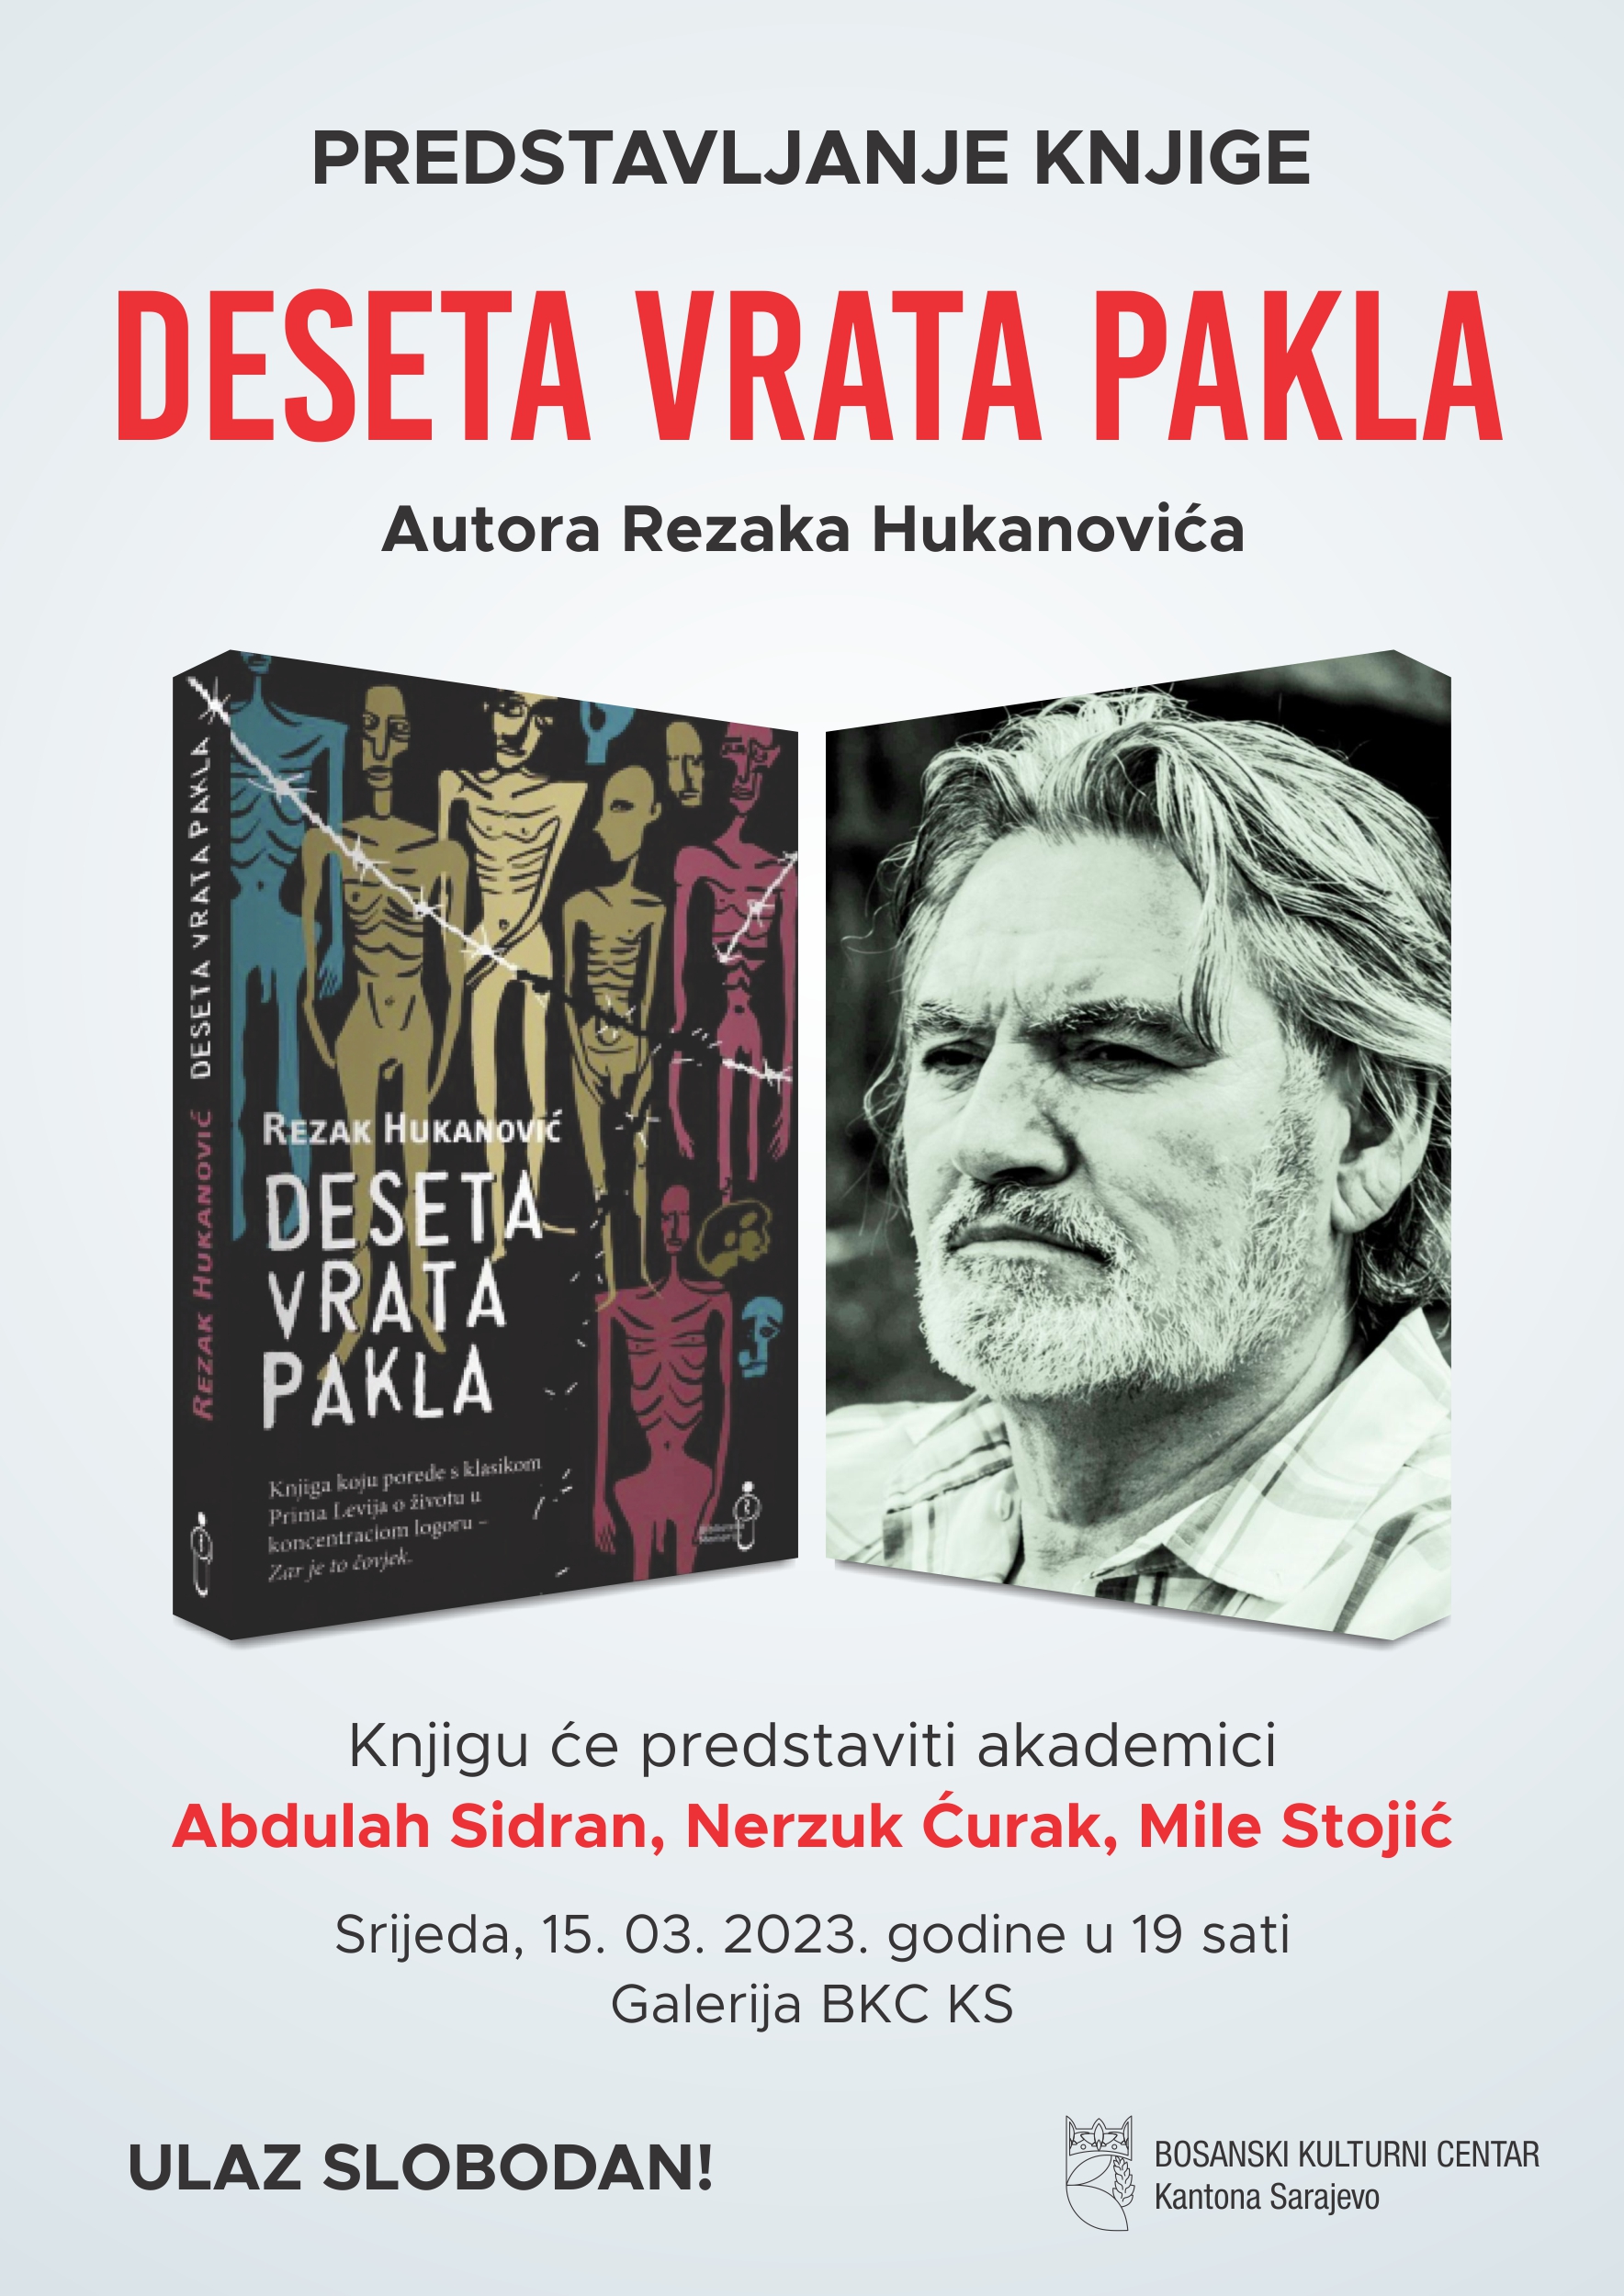 Predstavljanje knjige „Deseta vrata pakla“, autora Rezaka Hukanovića, 15. 03. u 19 sati, Galerija BKC-a